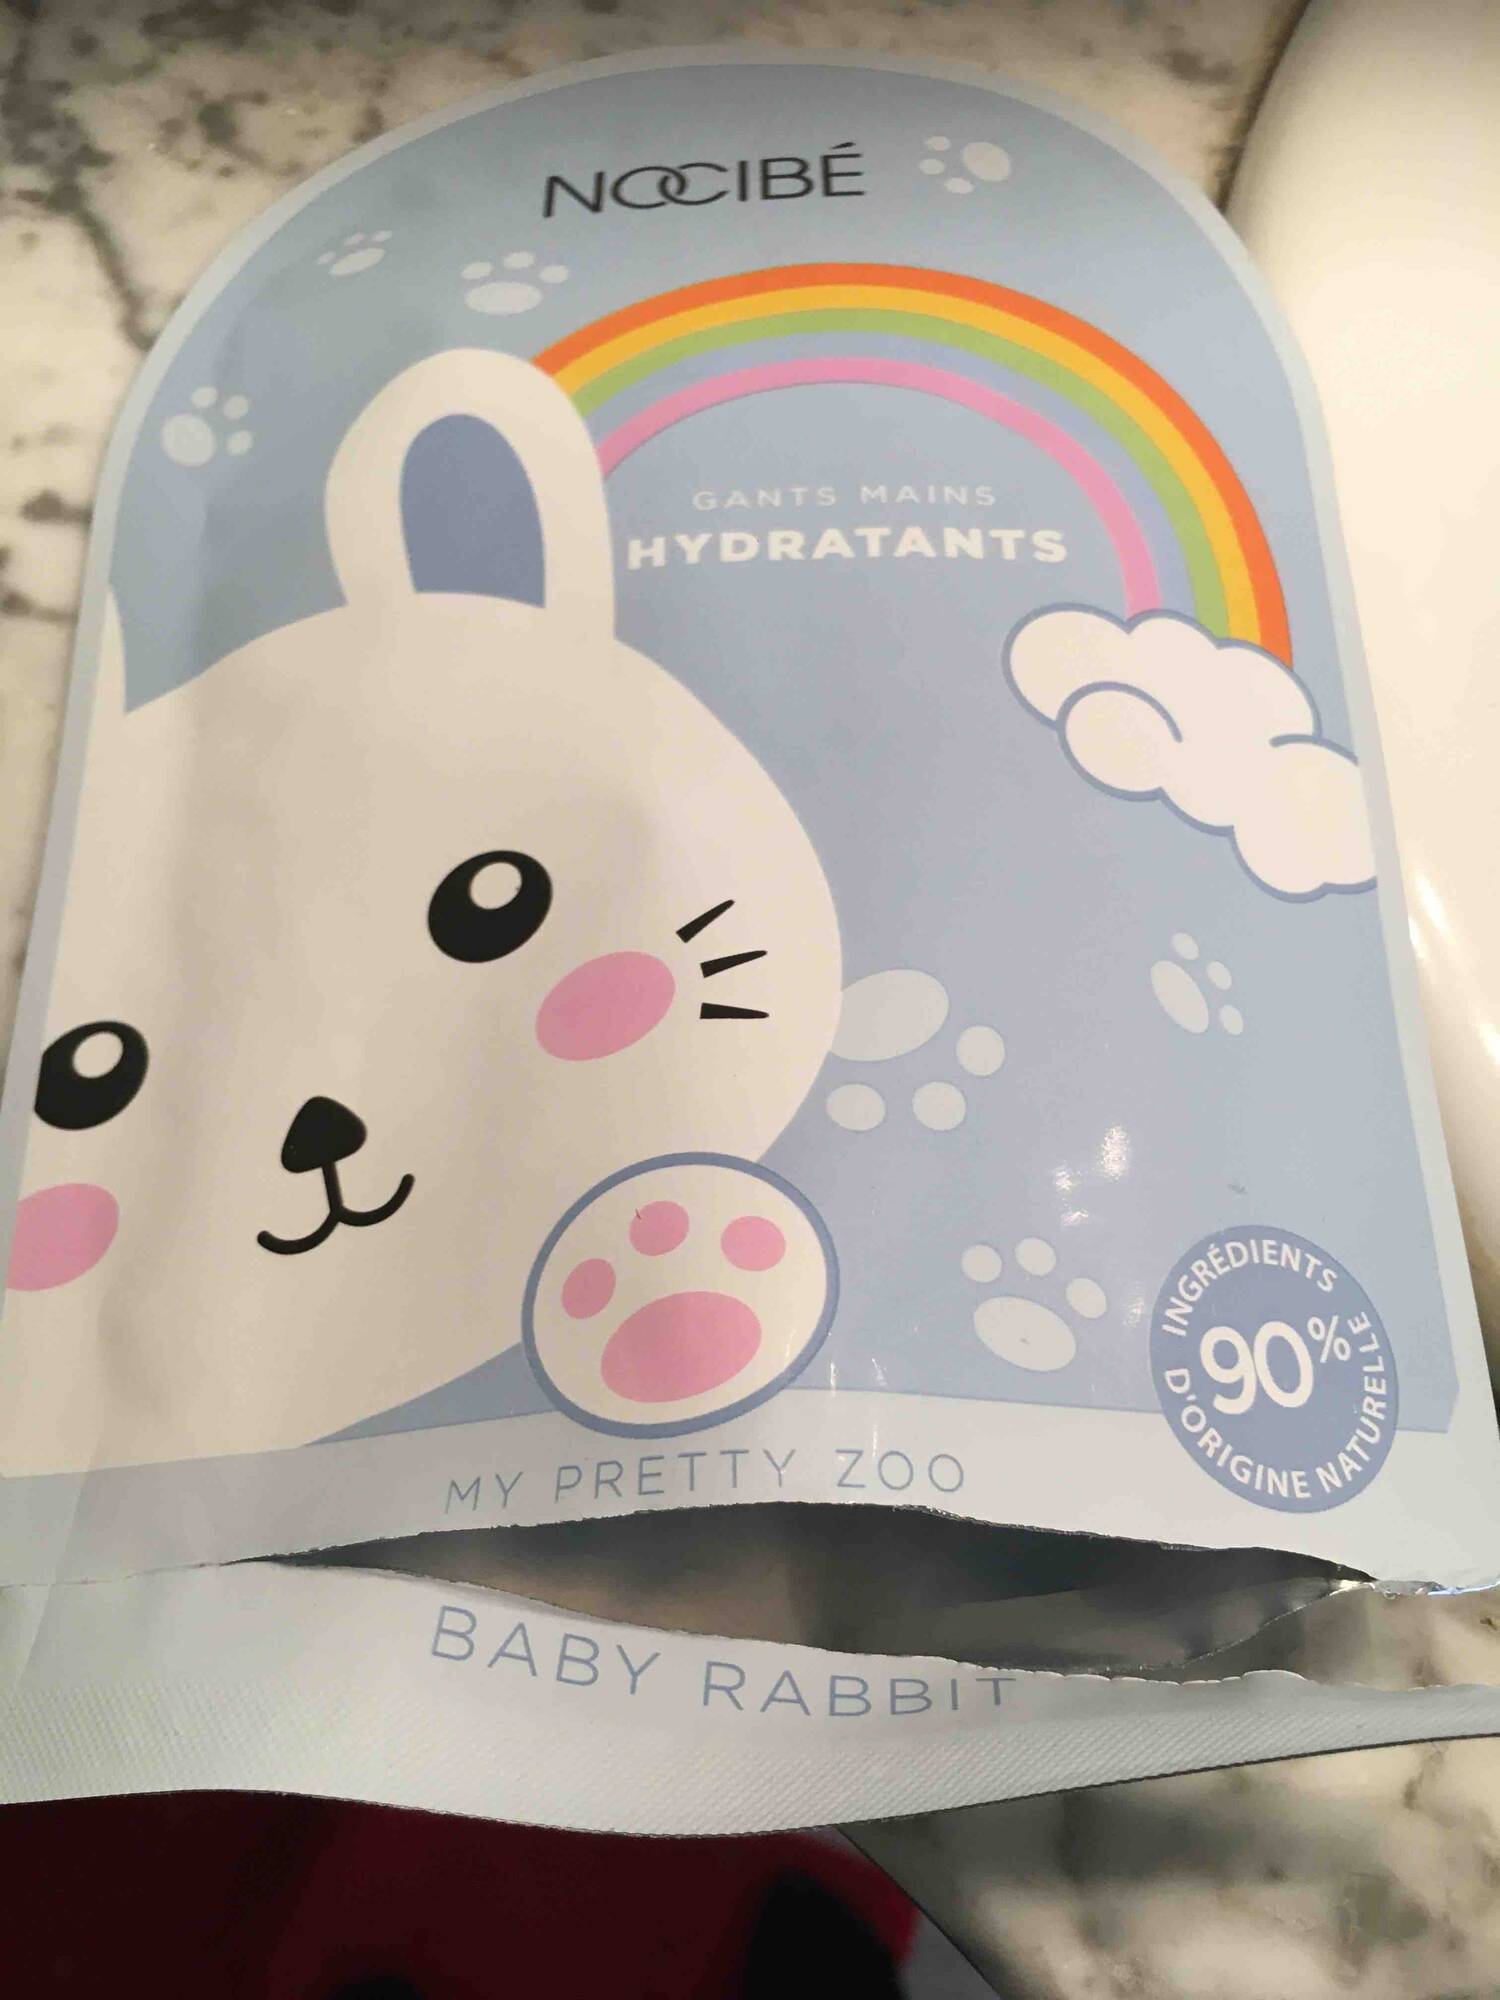 NOCIBÉ - Baby rabbit - Gants mains hydratants